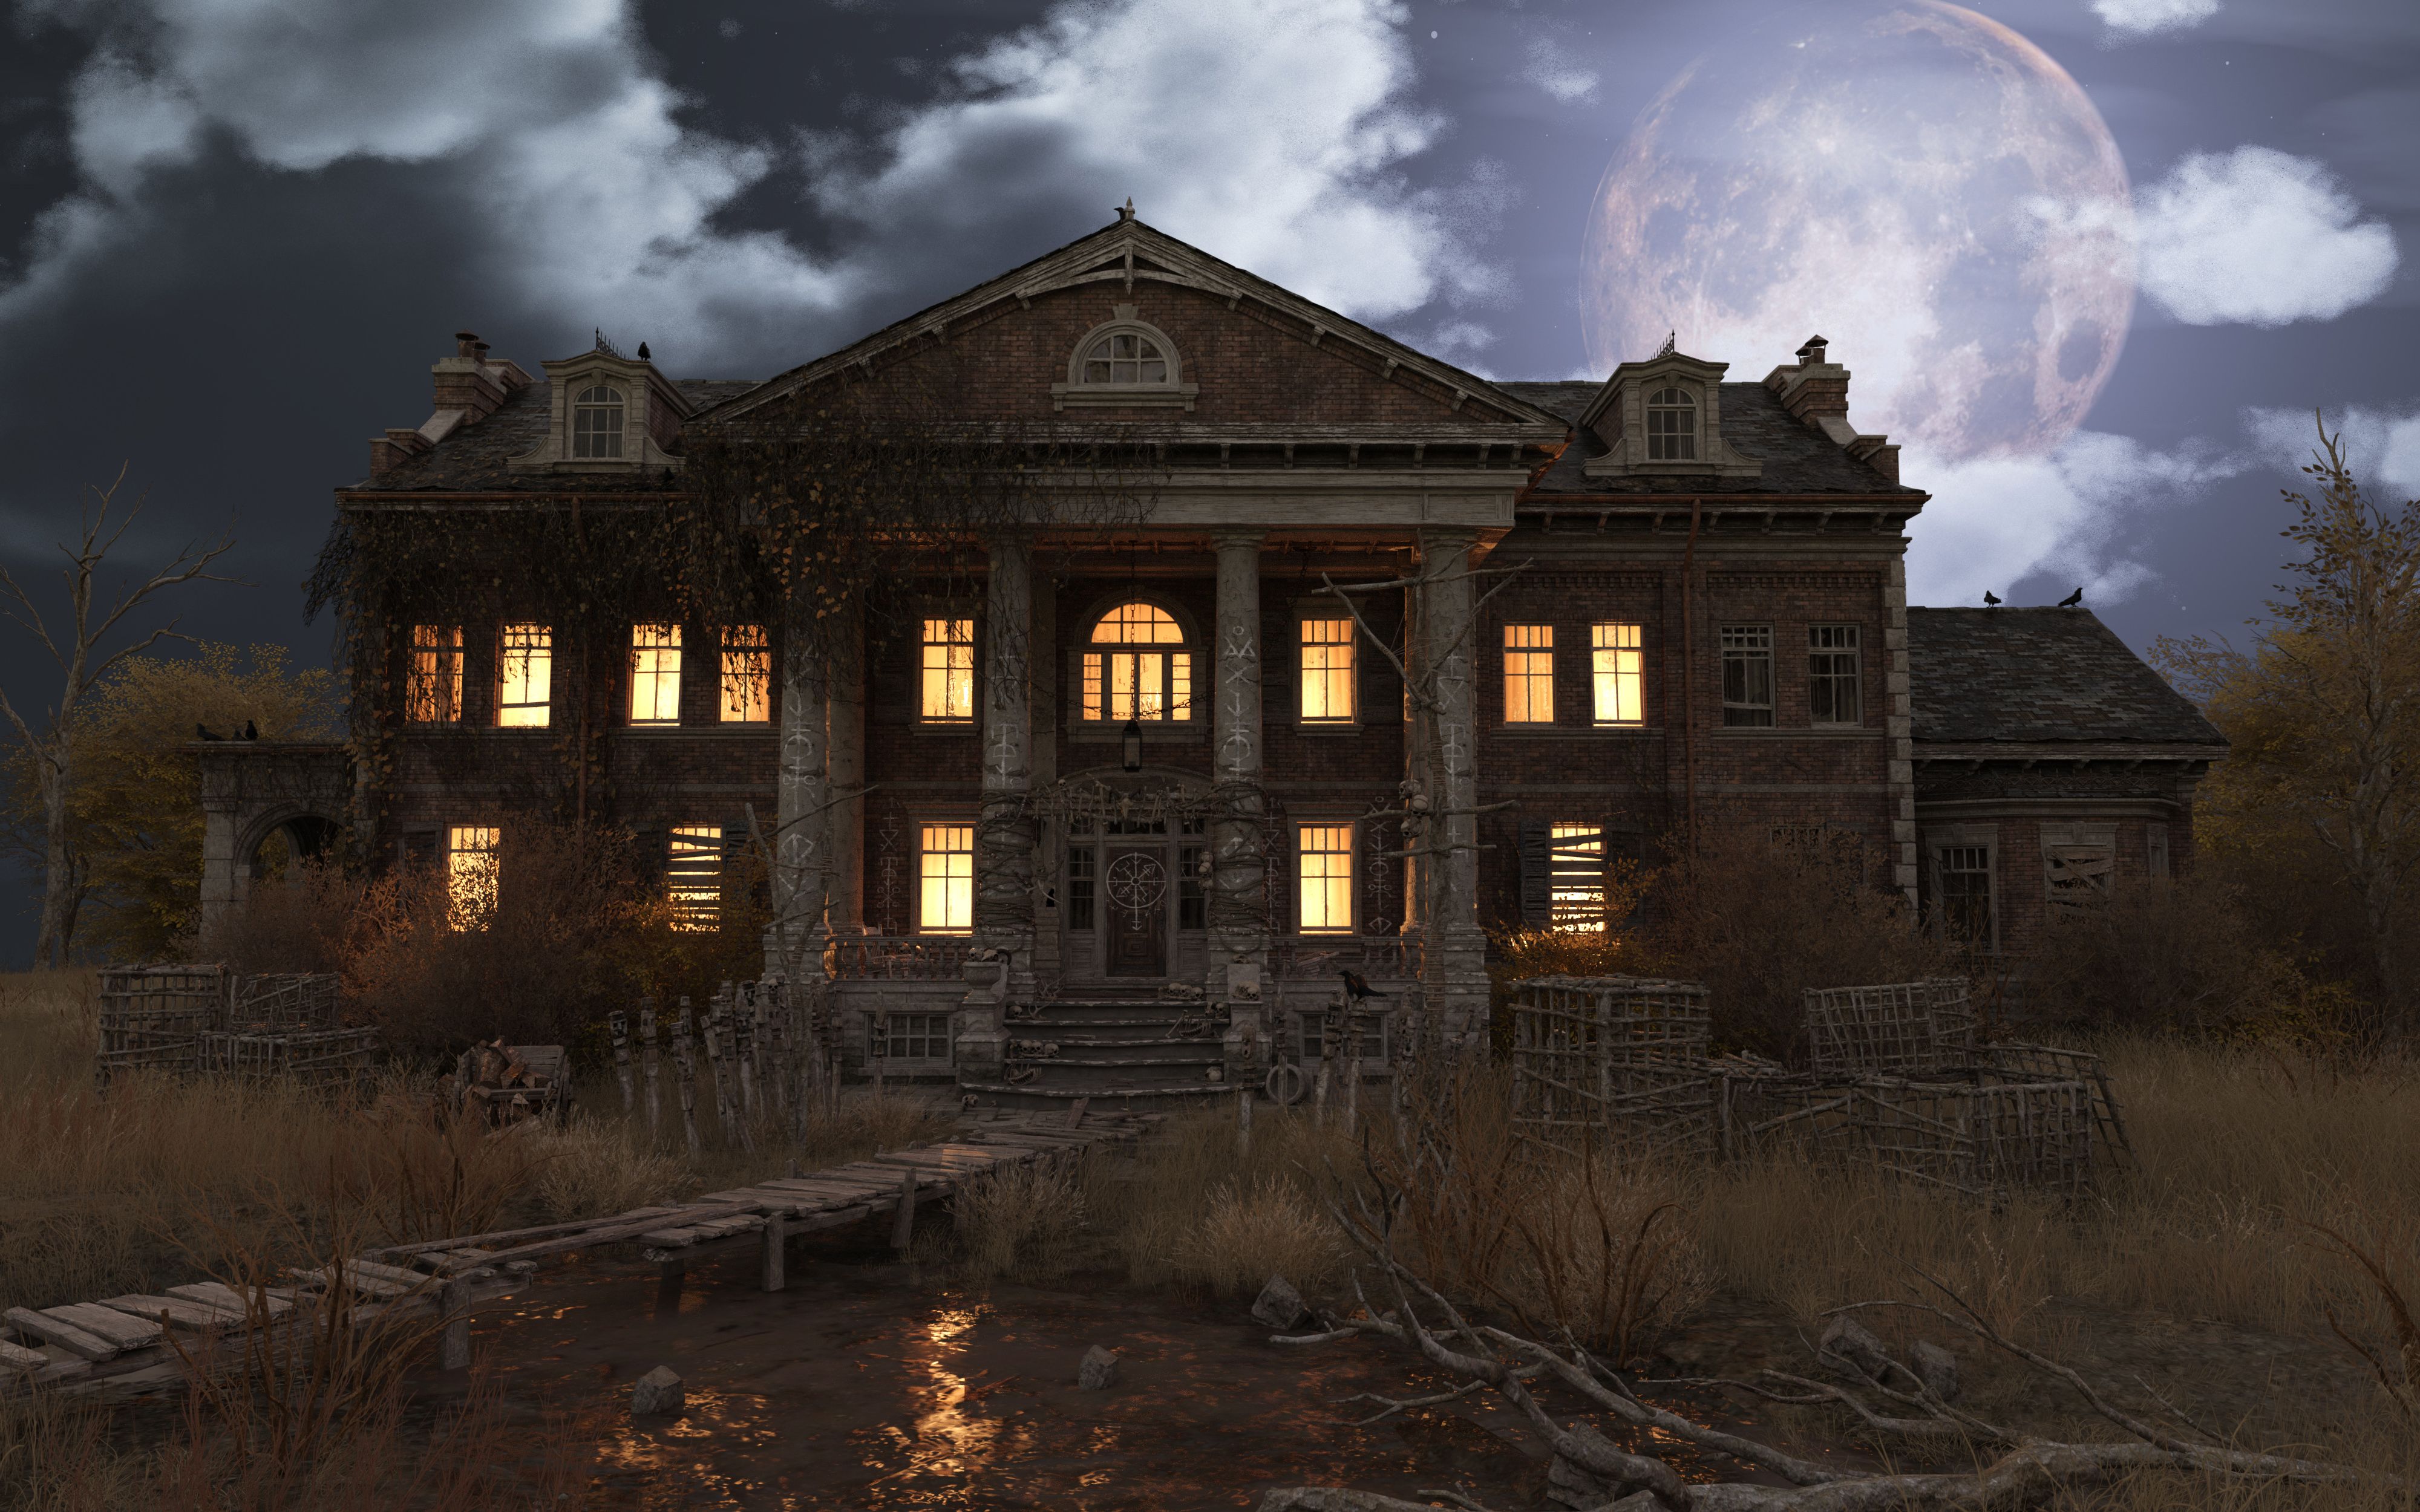 abandoned-haunted-house-refuge-of-spirits-moonlit-royalty-free-image-1633983690